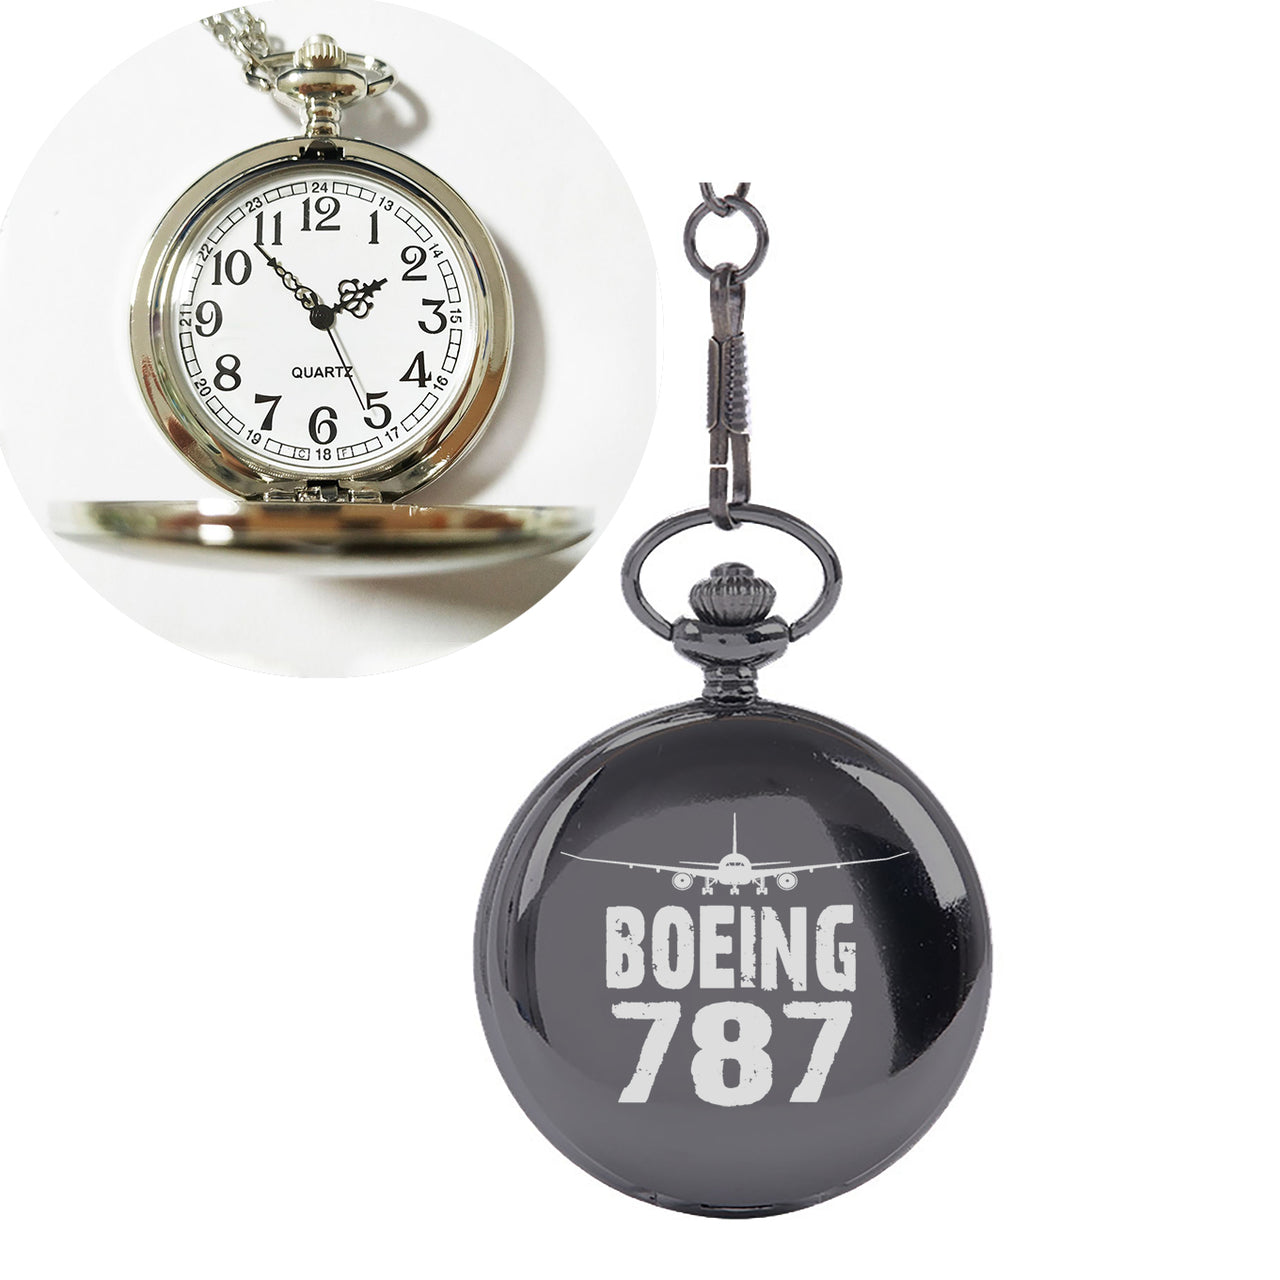 Boeing 787 & Plane Designed Pocket Watches